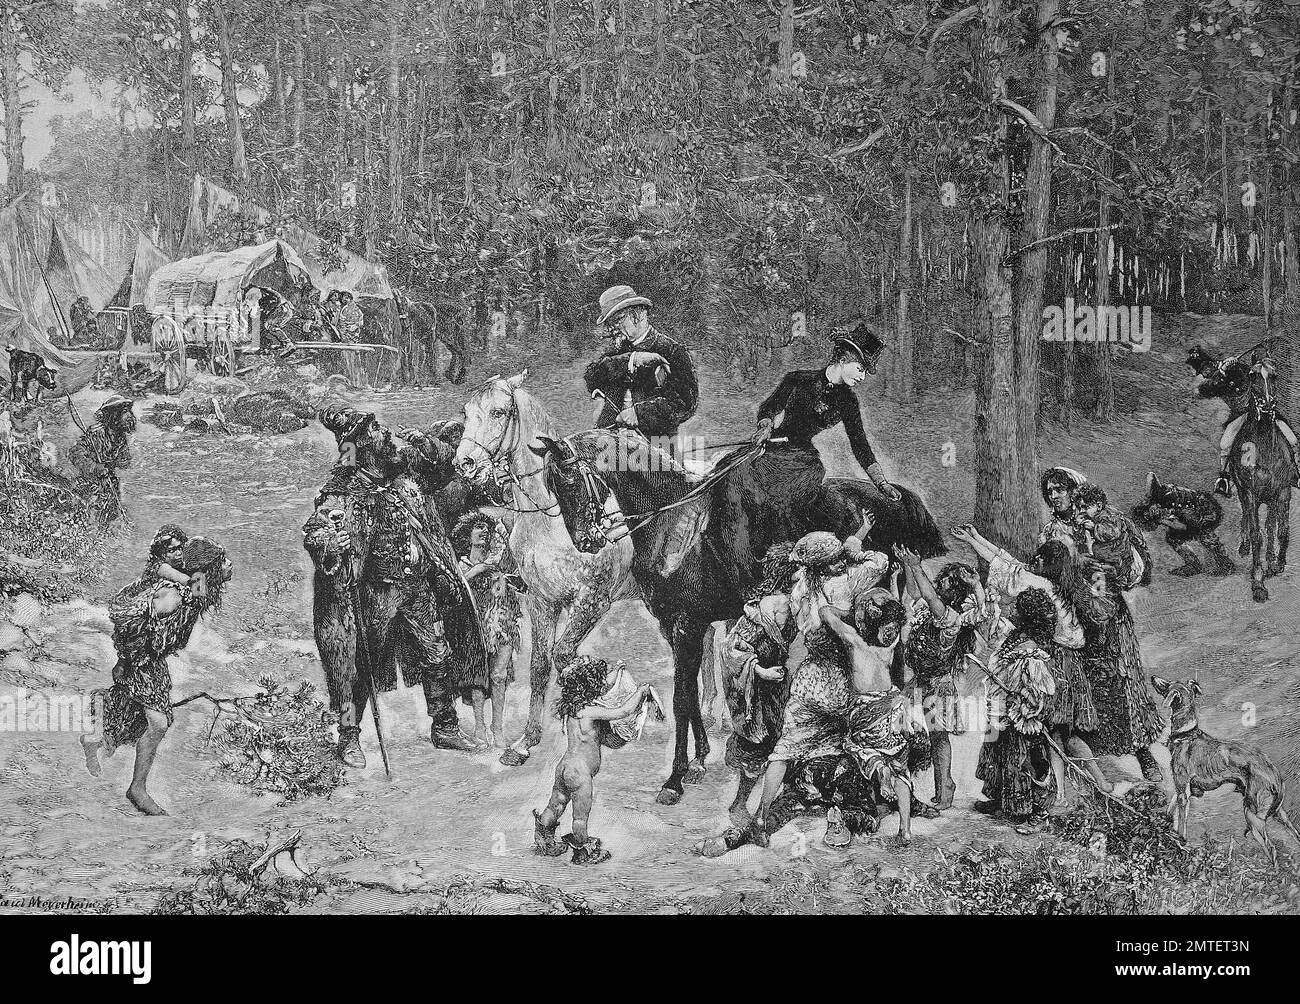 La mendicité des enfants mendiants, gypsie s'attaquera à couple distingué en sortant, illustration publié en 1880 Banque D'Images